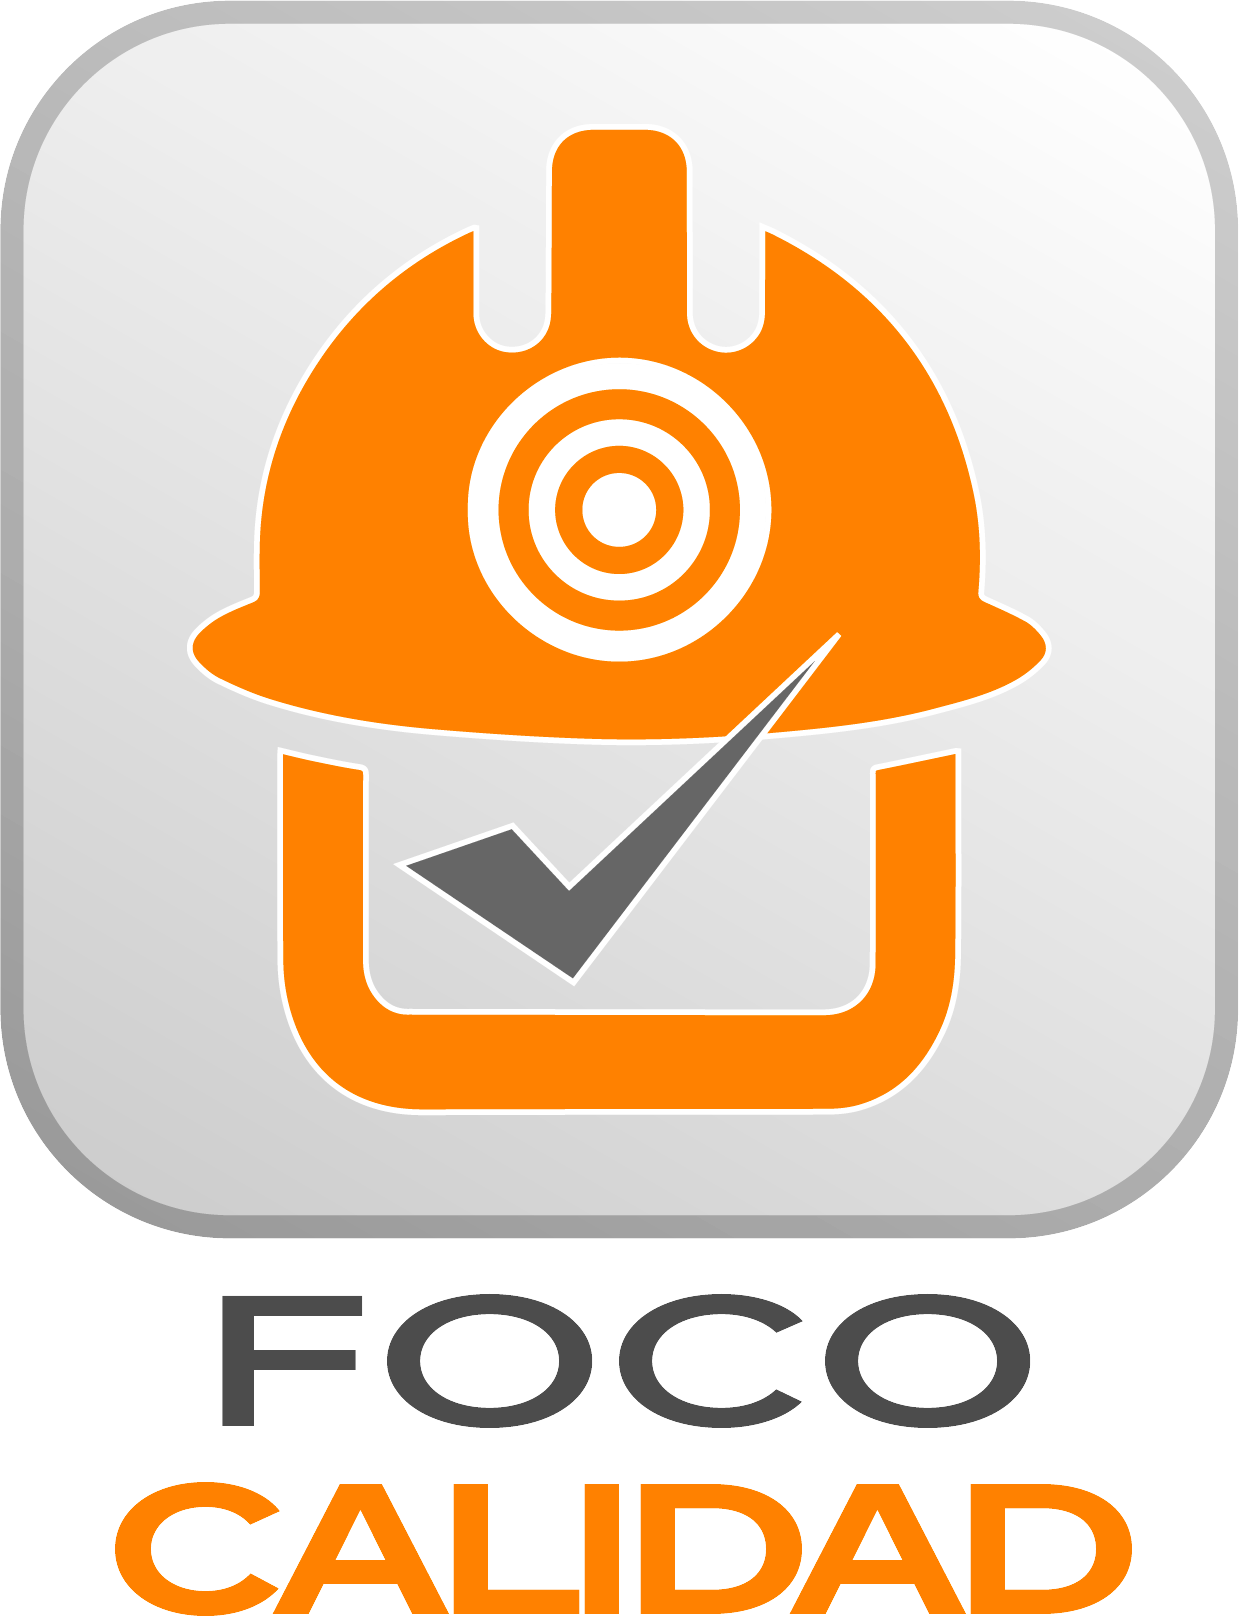 Foco Calidad logo